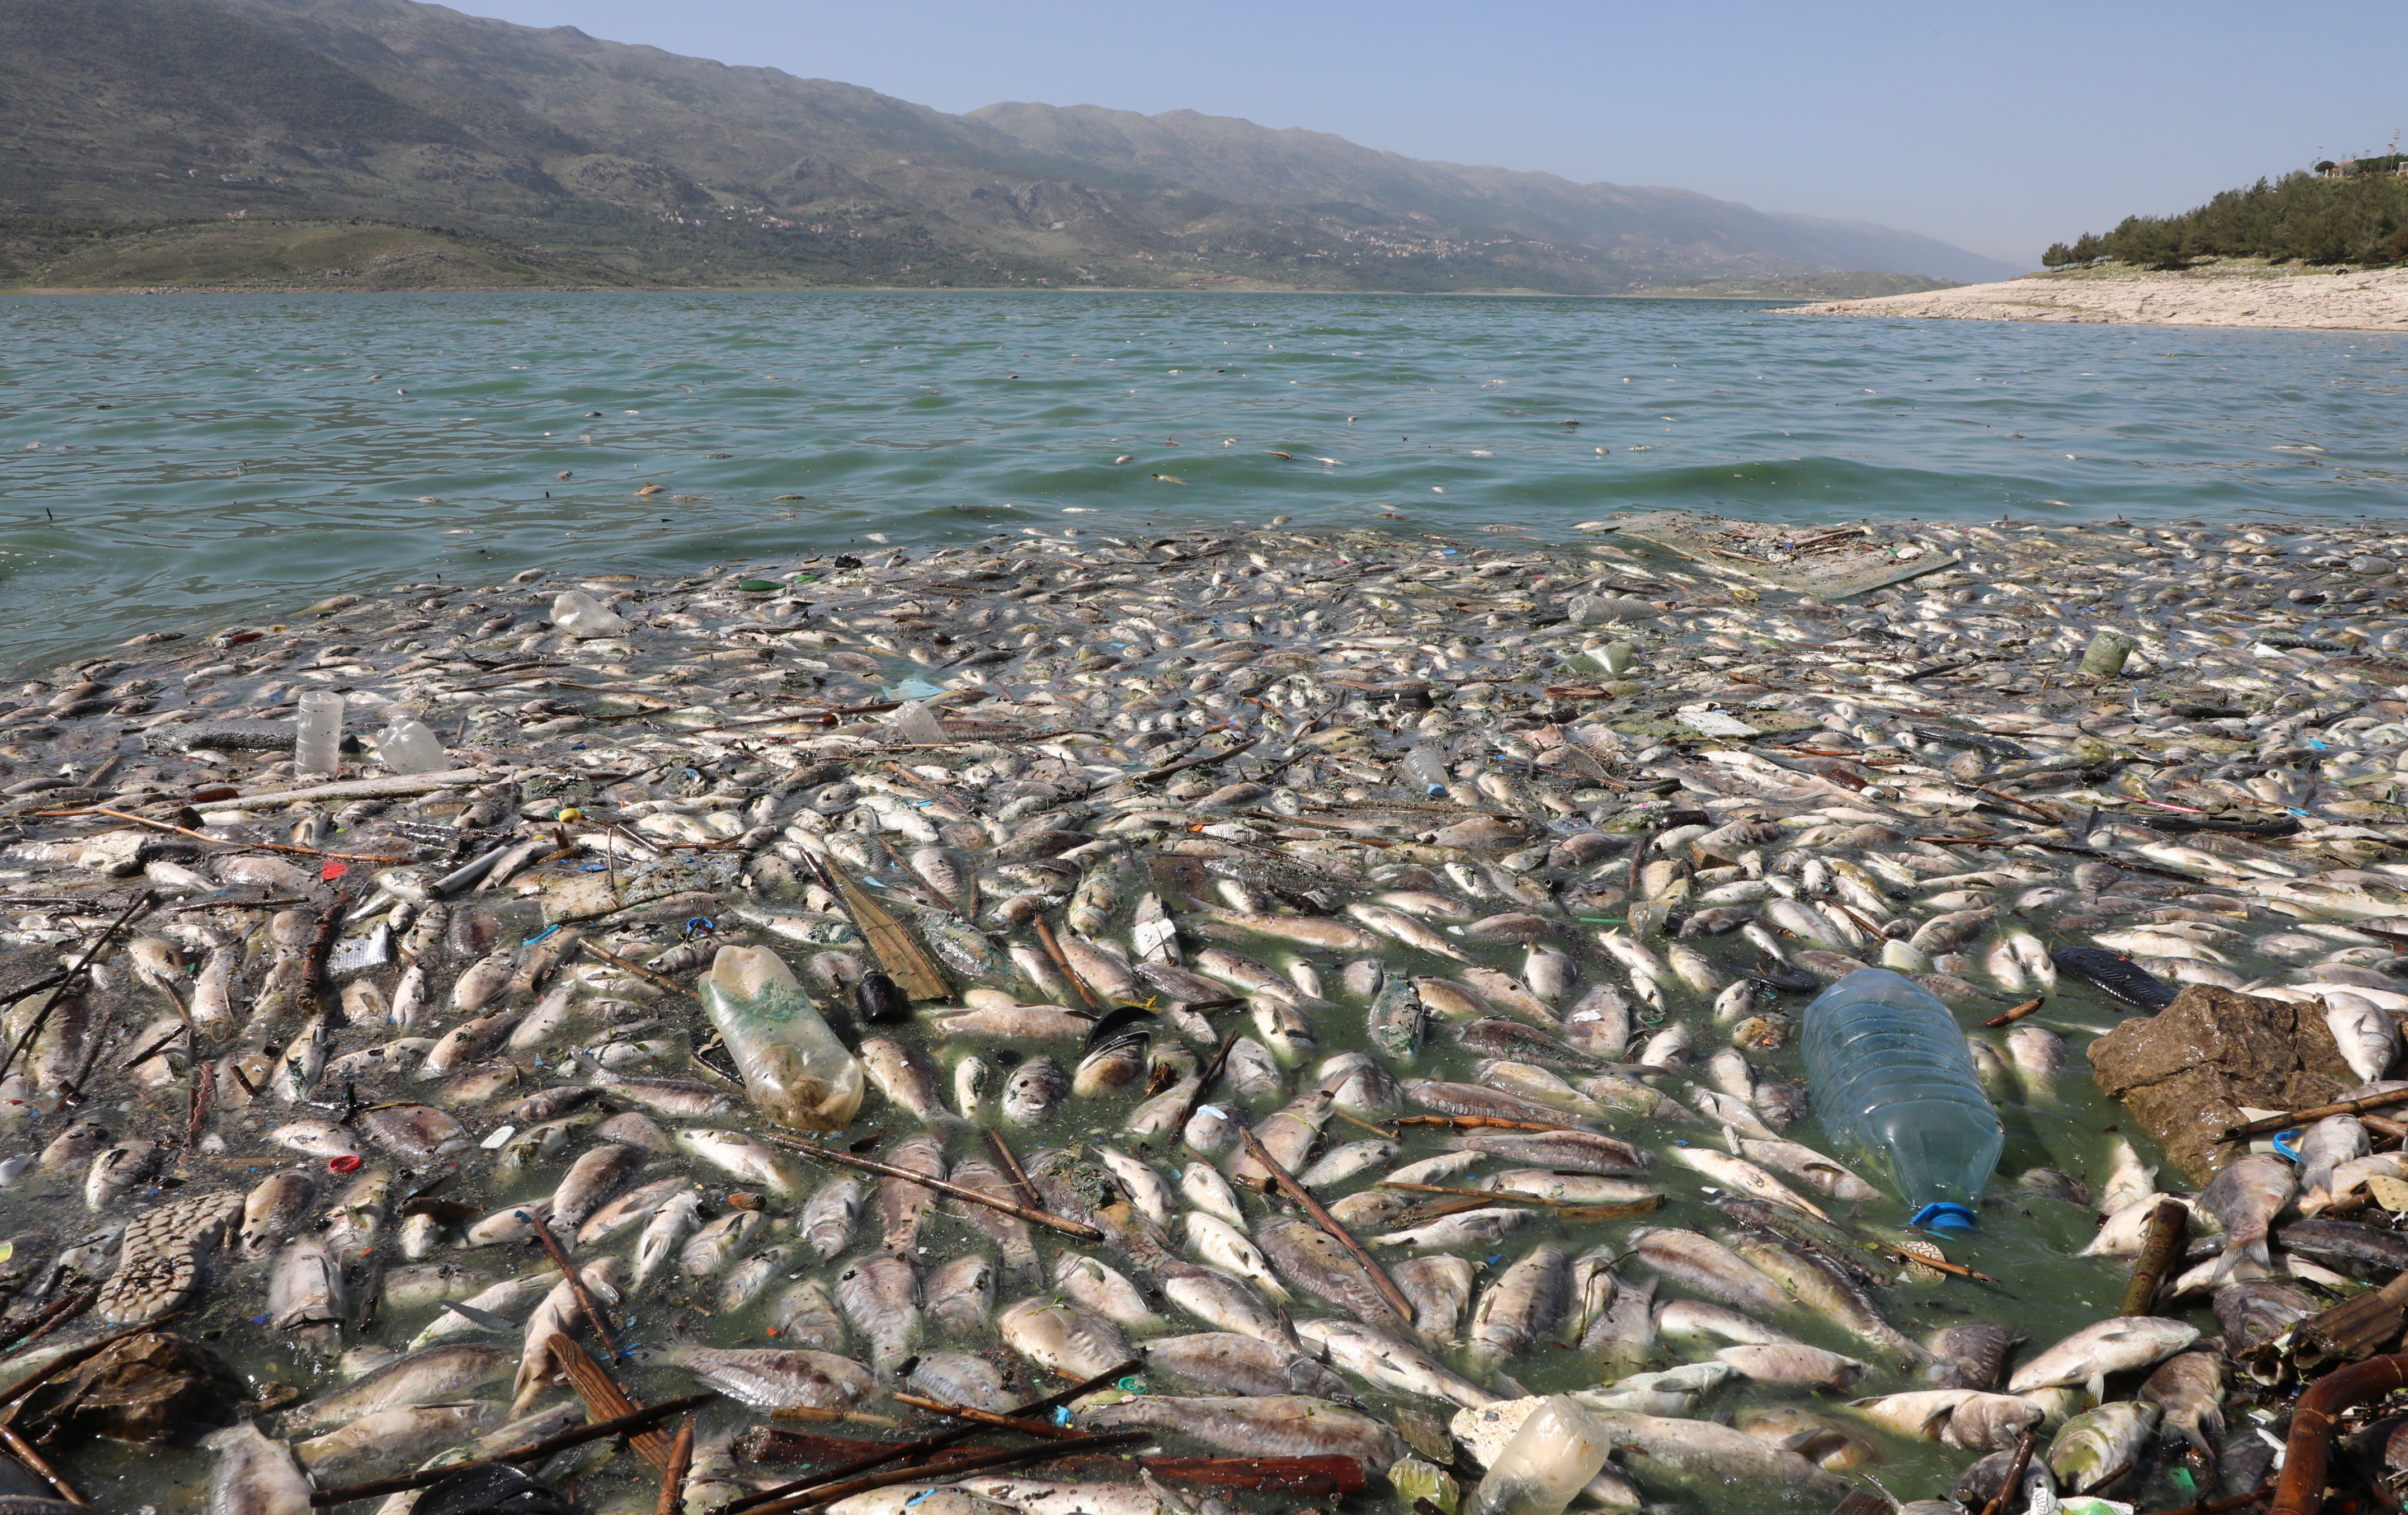 Peces muertos flotando en el lago Qaraoun, en Lbano.